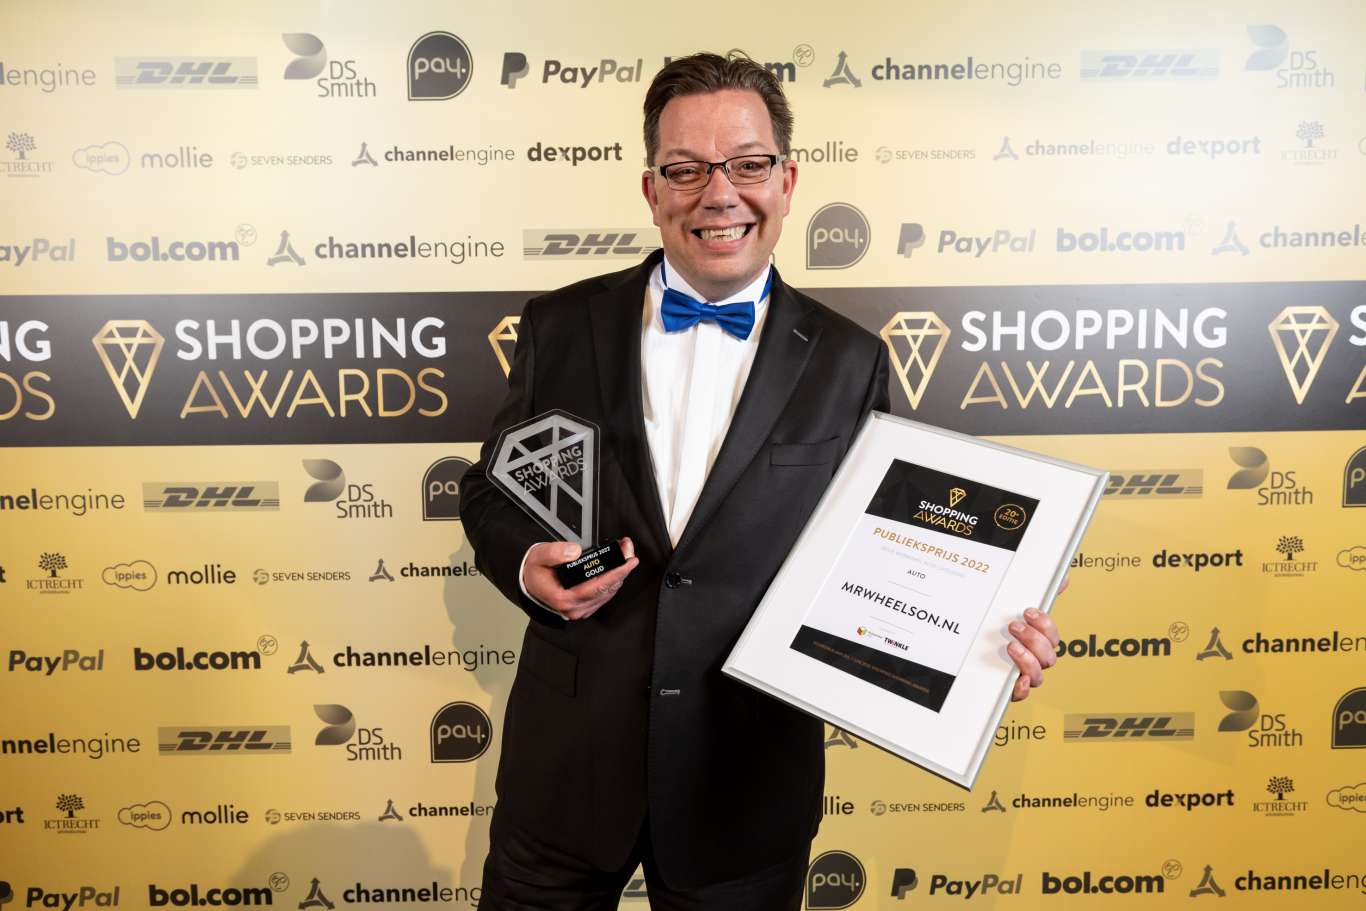 shopping-awards-2022-mrwheelson-2-1